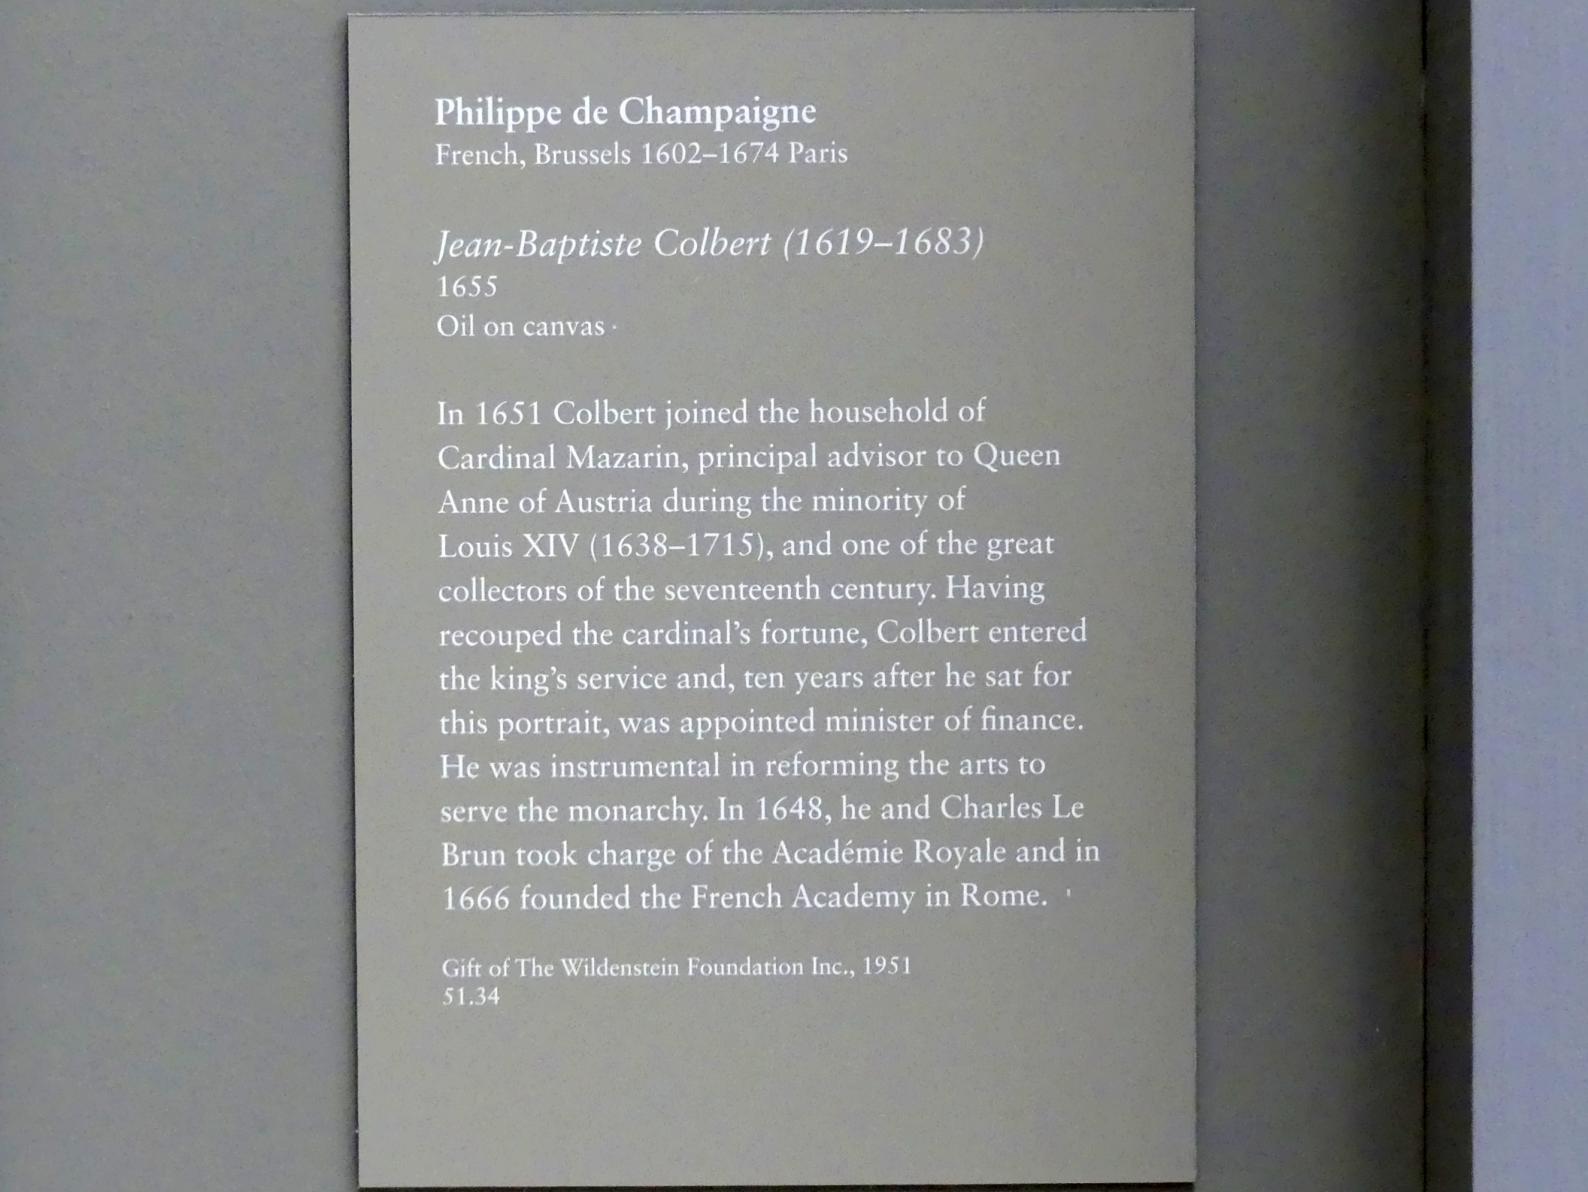 Philippe de Champaigne (1629–1668), Jean-Baptiste Colbert (1619-1683), New York, Metropolitan Museum of Art (Met), Saal 634, 1655, Bild 2/2